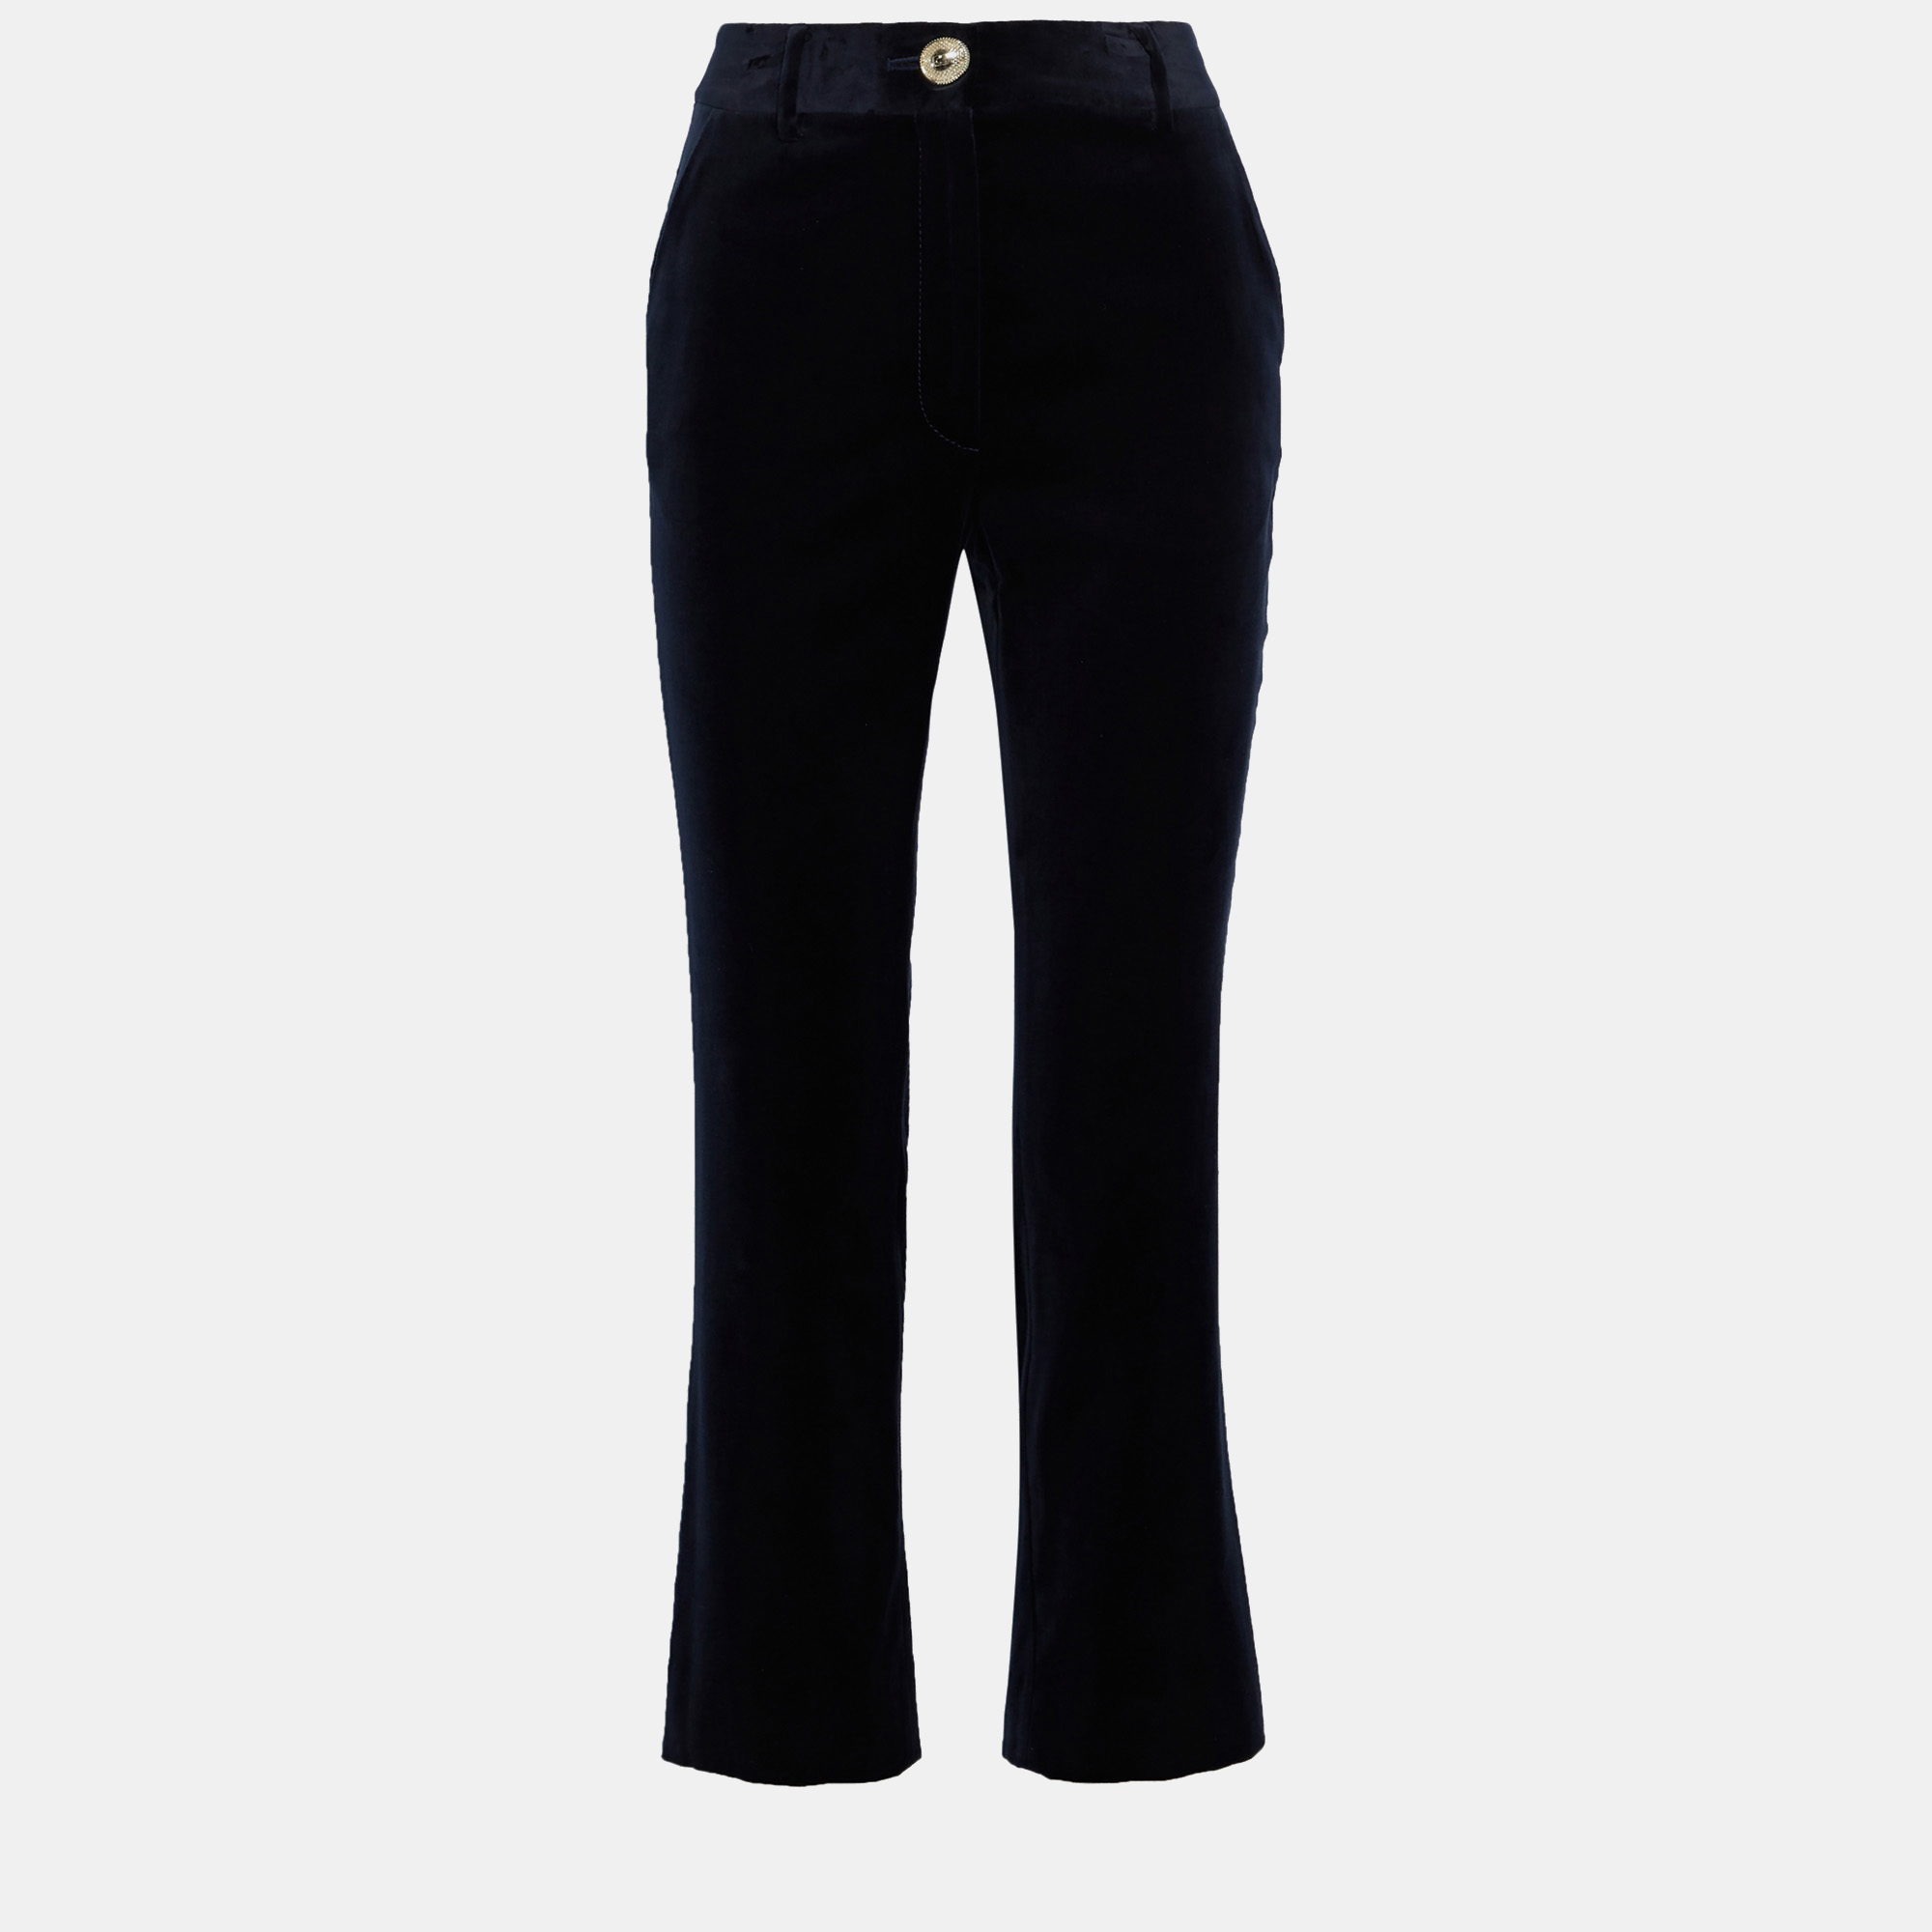 Diane von furstenberg cotton bootcut pants 12